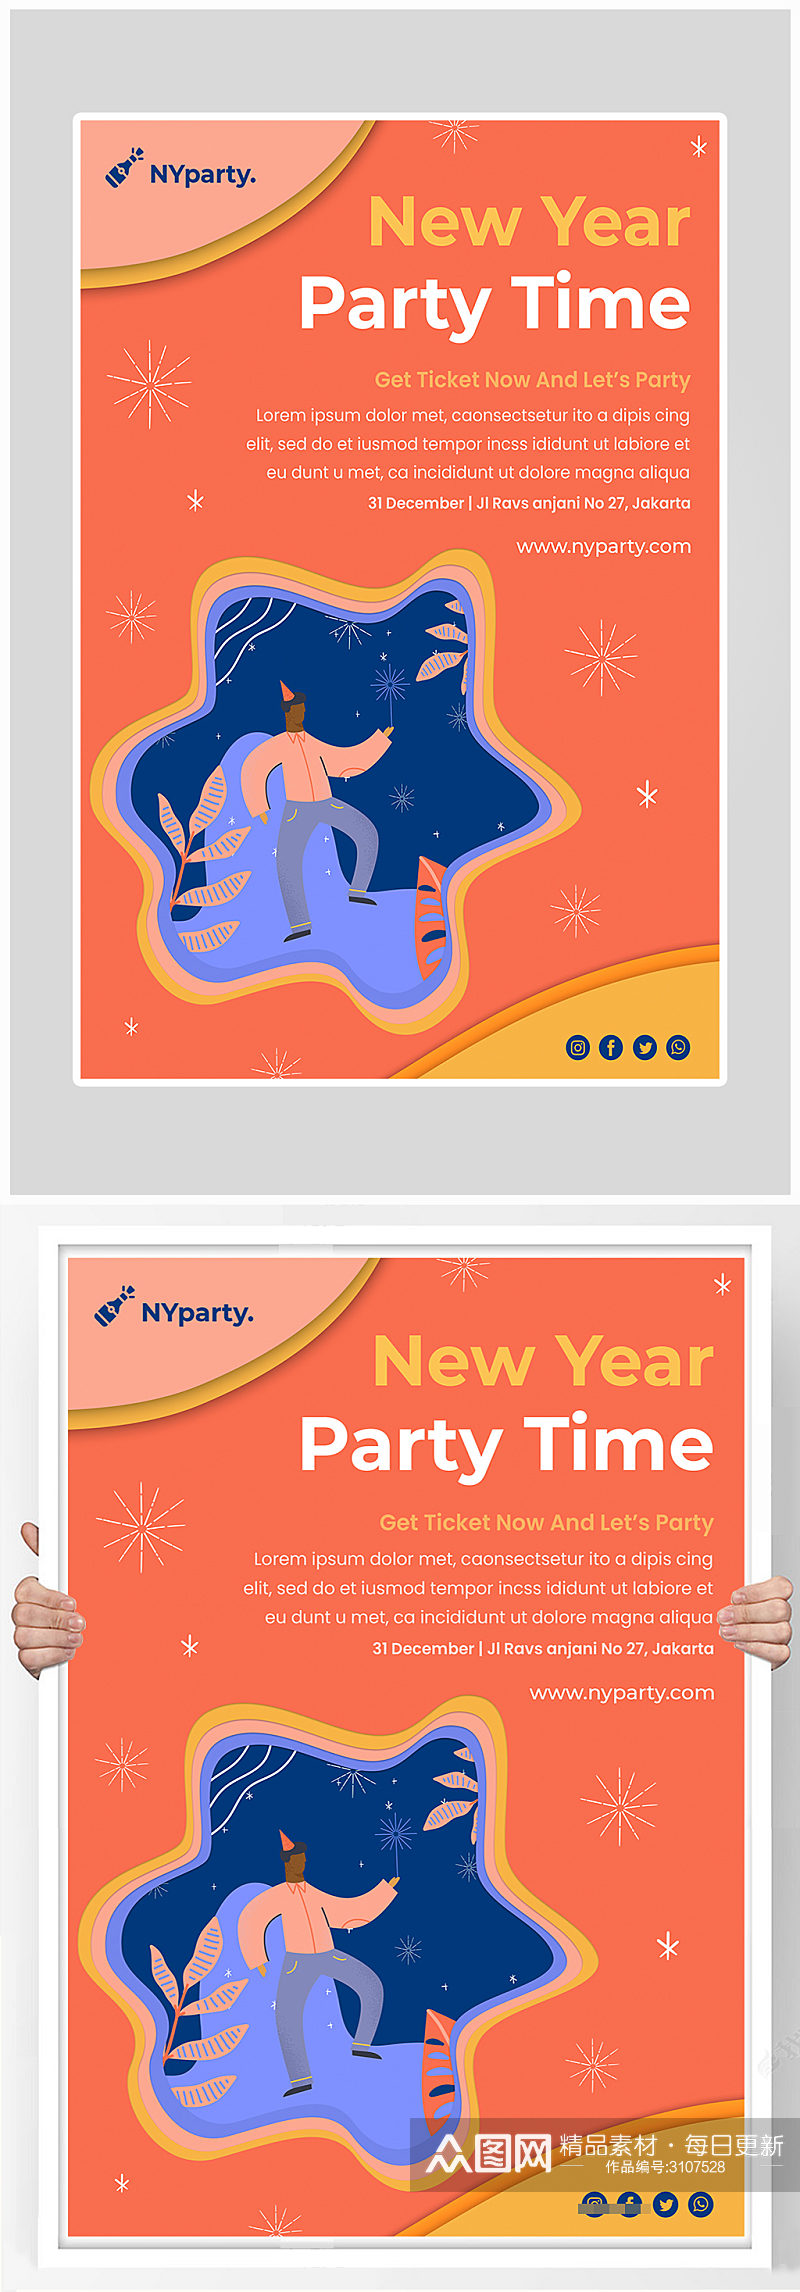 创意简约新年派对狂欢海报设计素材